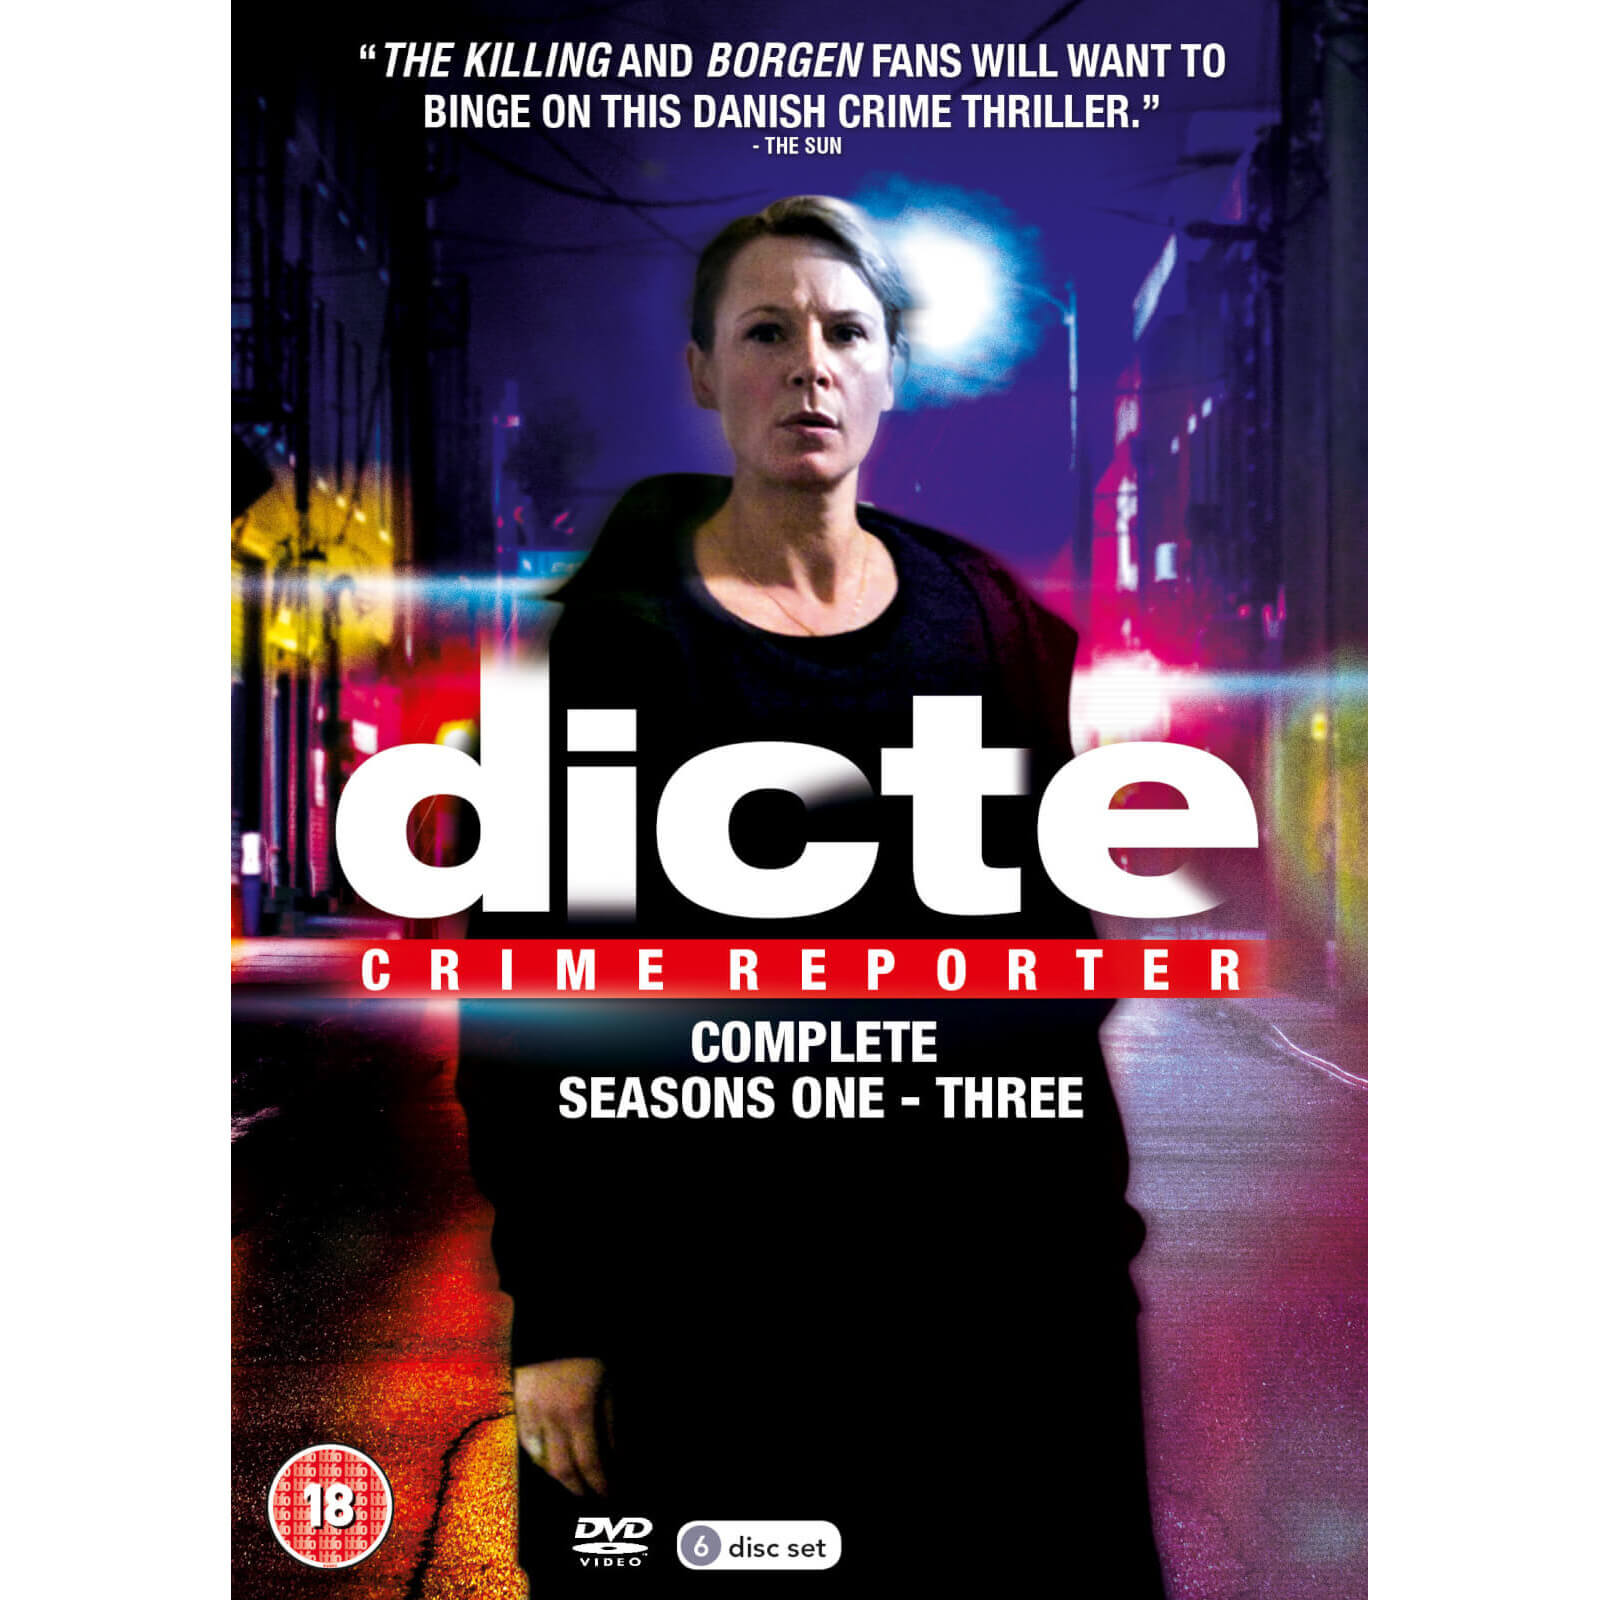 Dicte - Complete Series 1-3 von Acorn Media